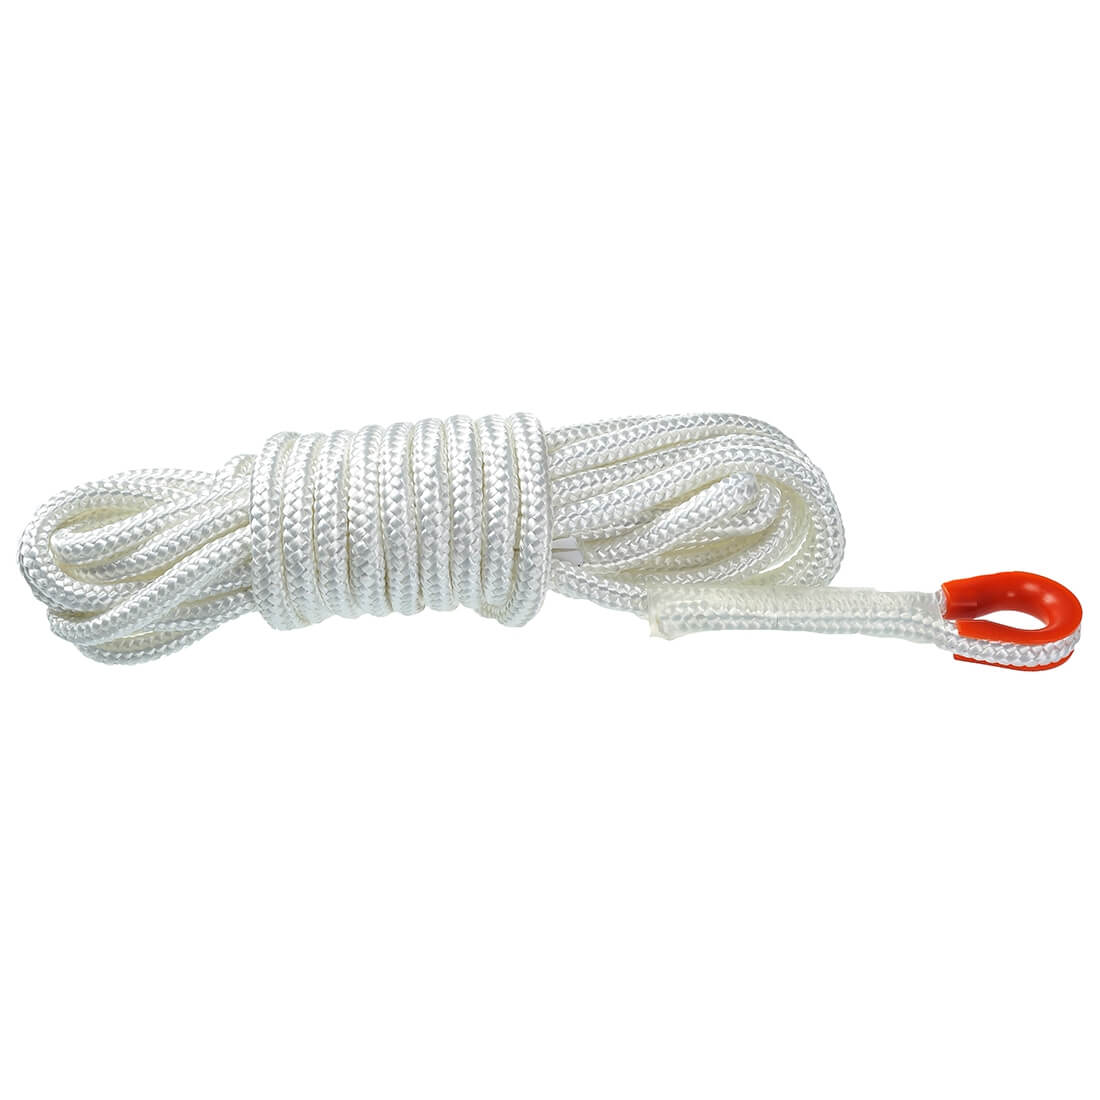 Cuerda estable 10 metros - Equipamientos de protección personal